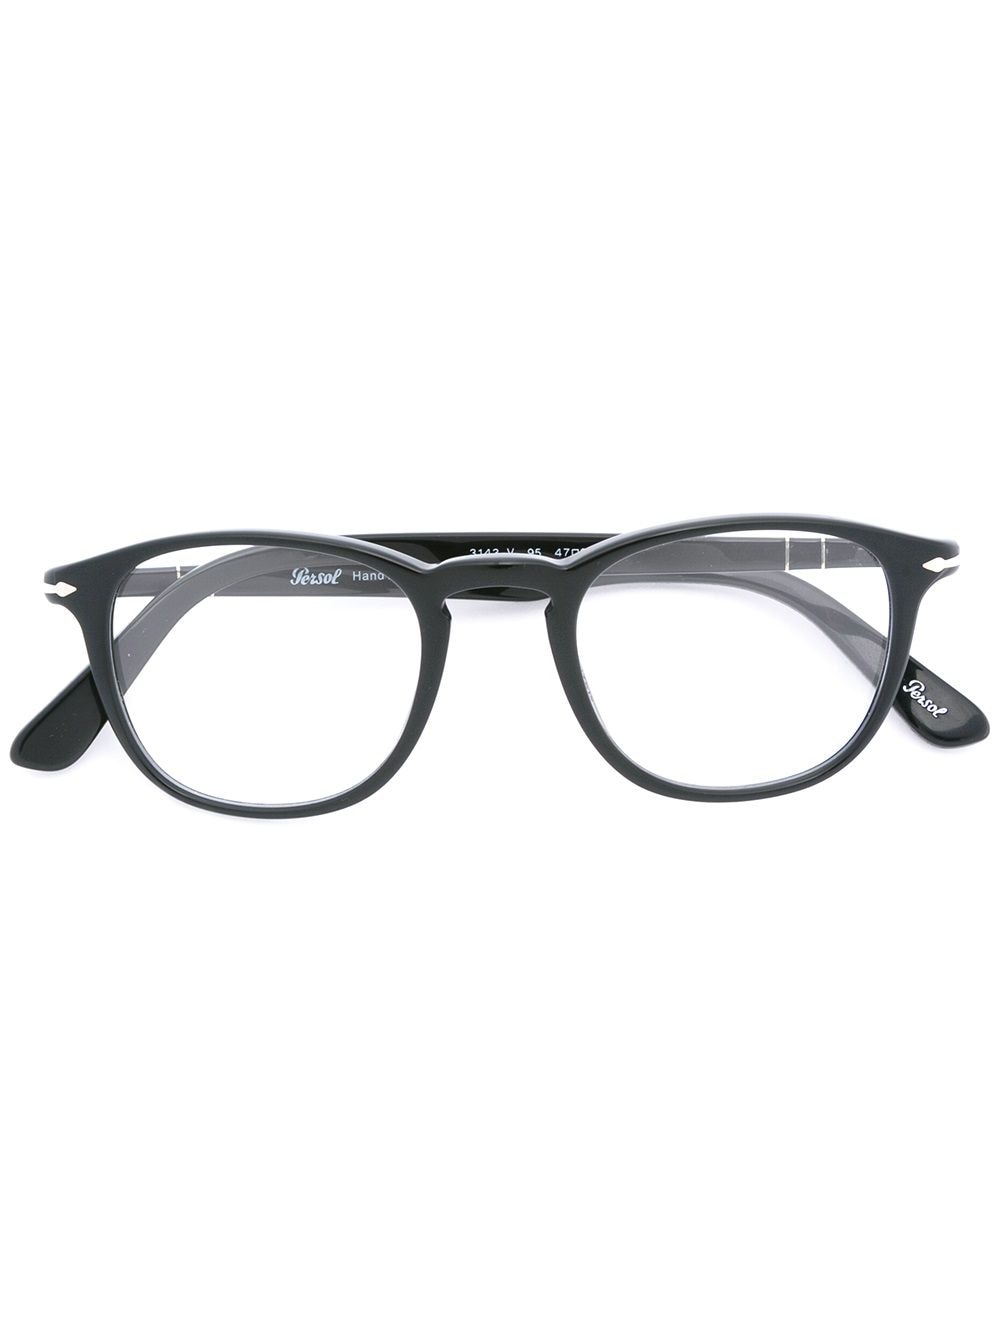 Persol Brille mit rundem Gestell - Schwarz von Persol